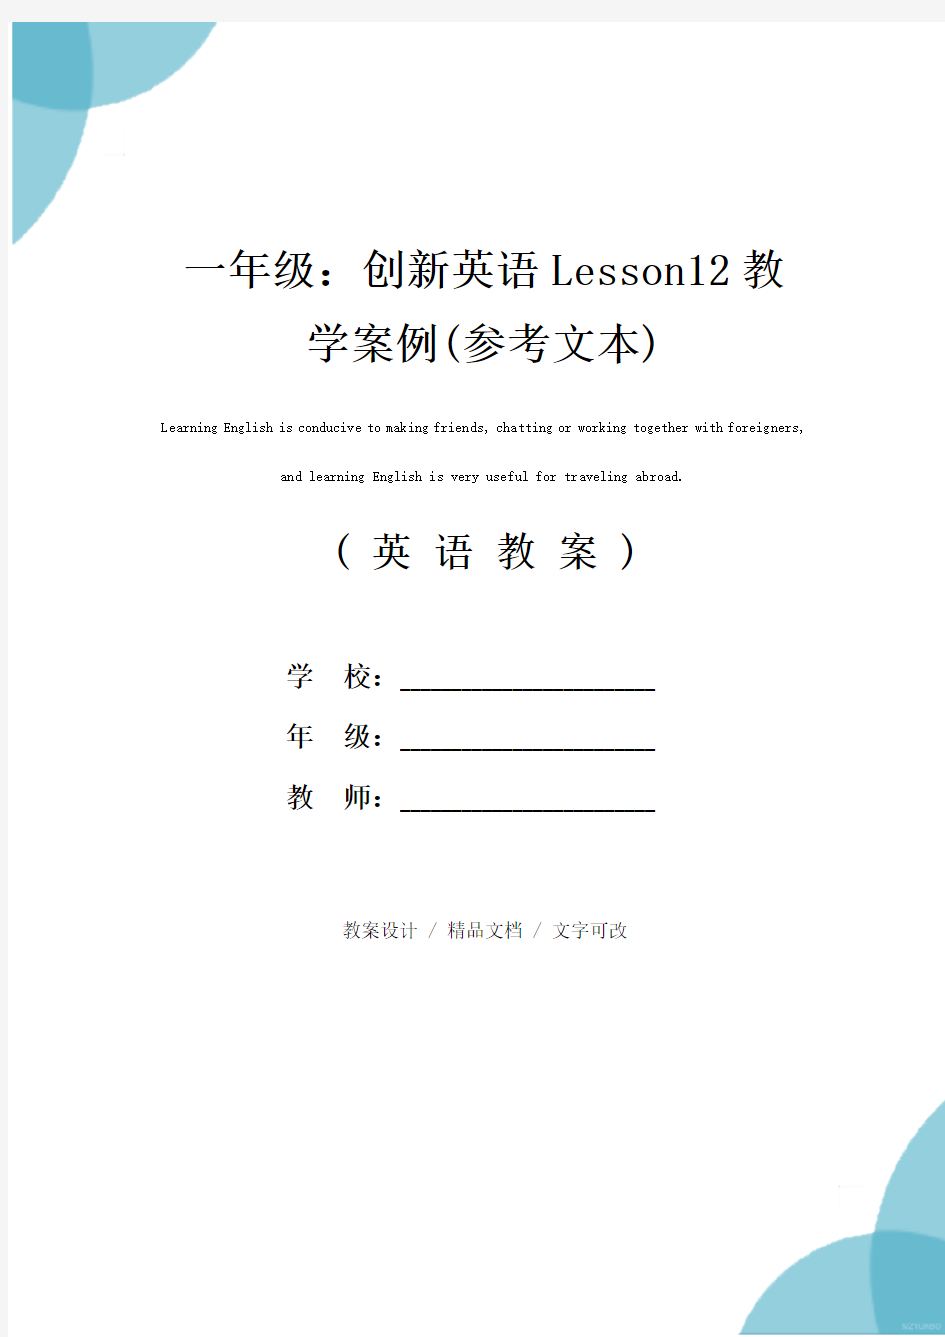 一年级：创新英语Lesson12教学案例(参考文本)